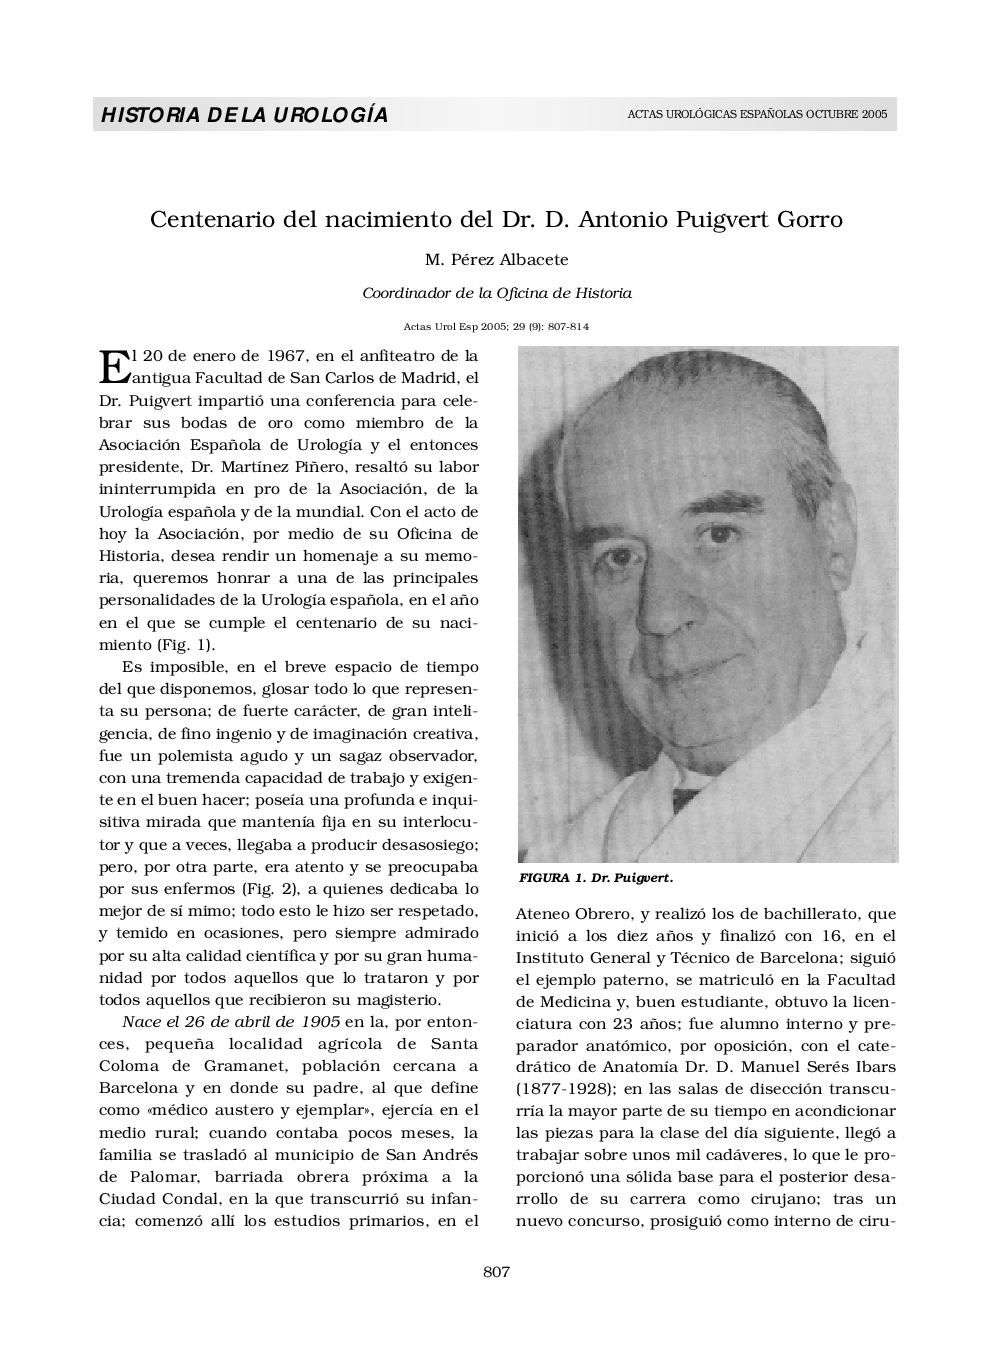 Centenario del nacimiento del Dr. D. Antonio Puigvert Gorro